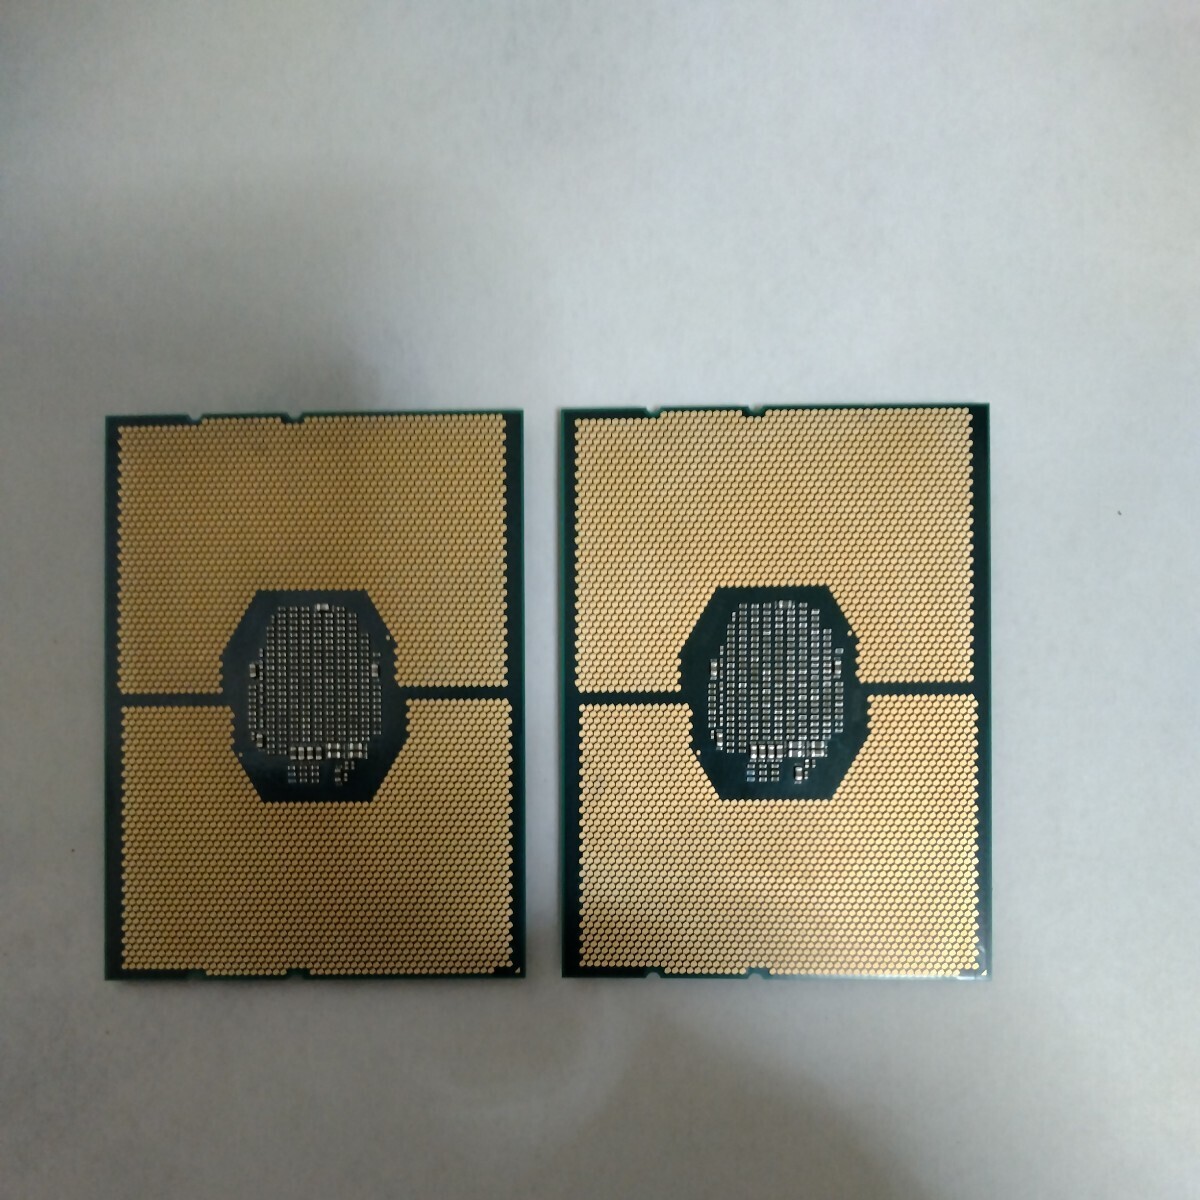 【動作確認済CPU2個セット】Intel Xeon Silver 4116, 12C / 24T, 2.1GHz base / 3.0GHz turbo, TDP 85 W, LGA3647ソケットの画像5